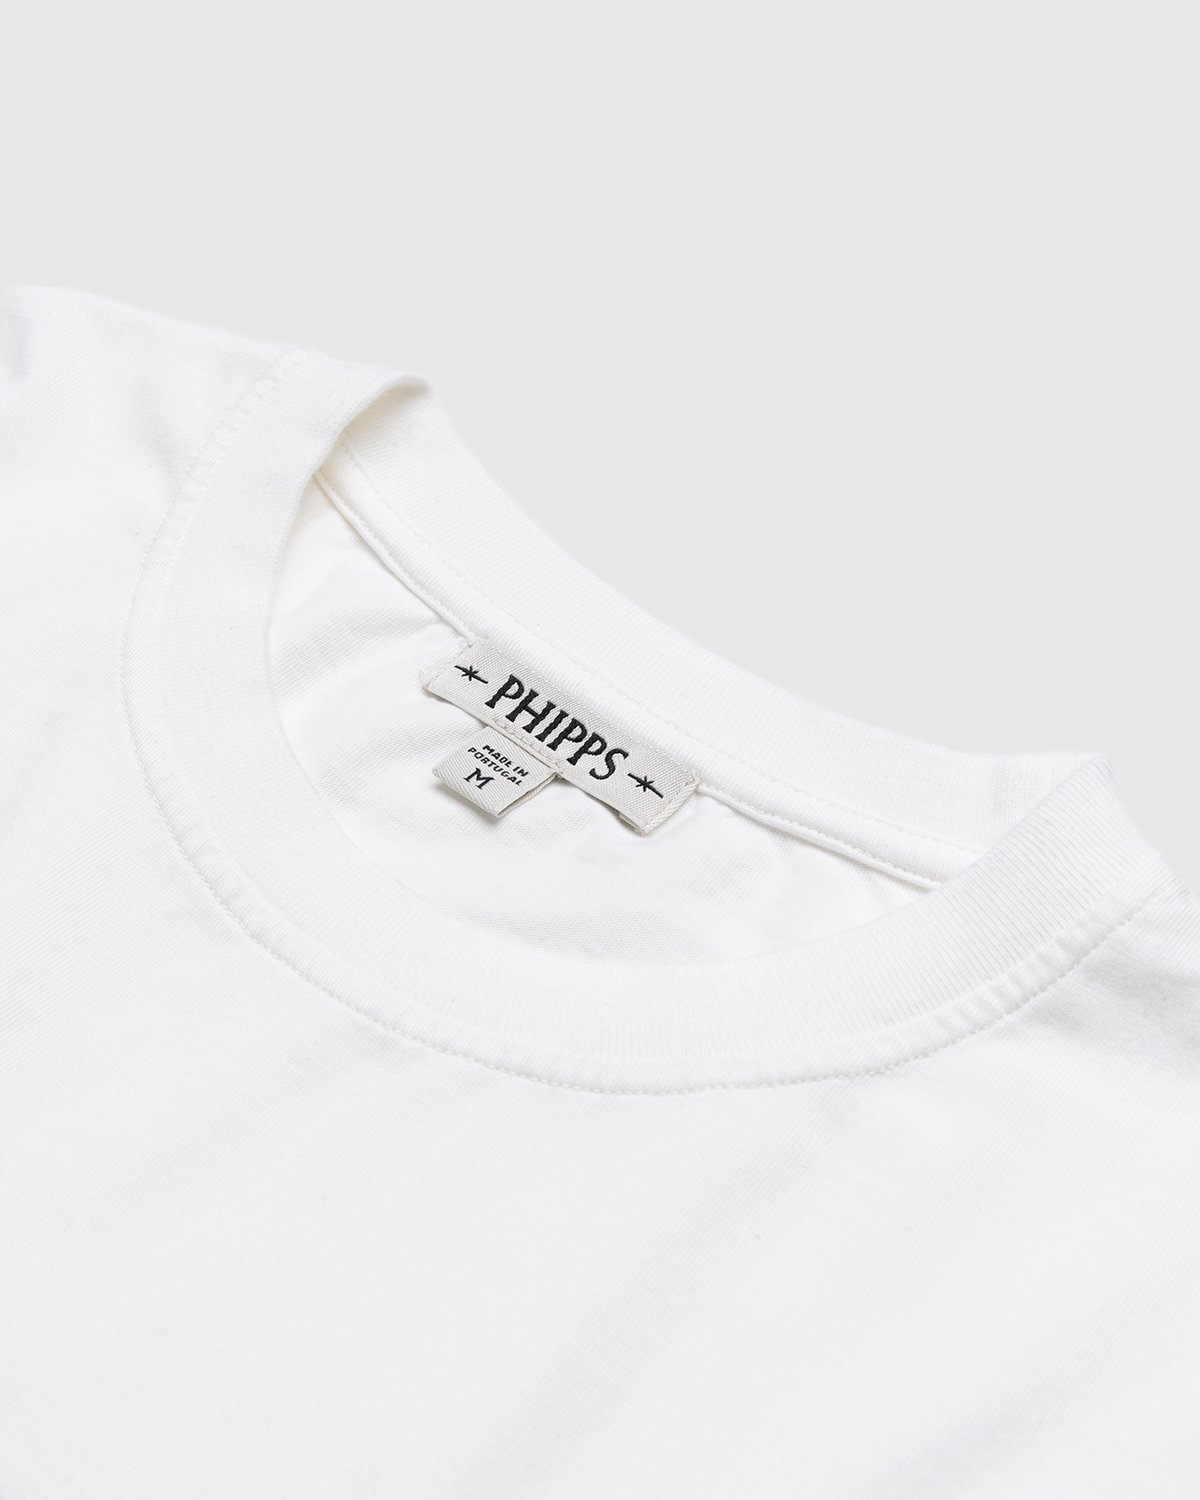 Phipps - Logo Longsleeve White - Clothing - White - Image 4